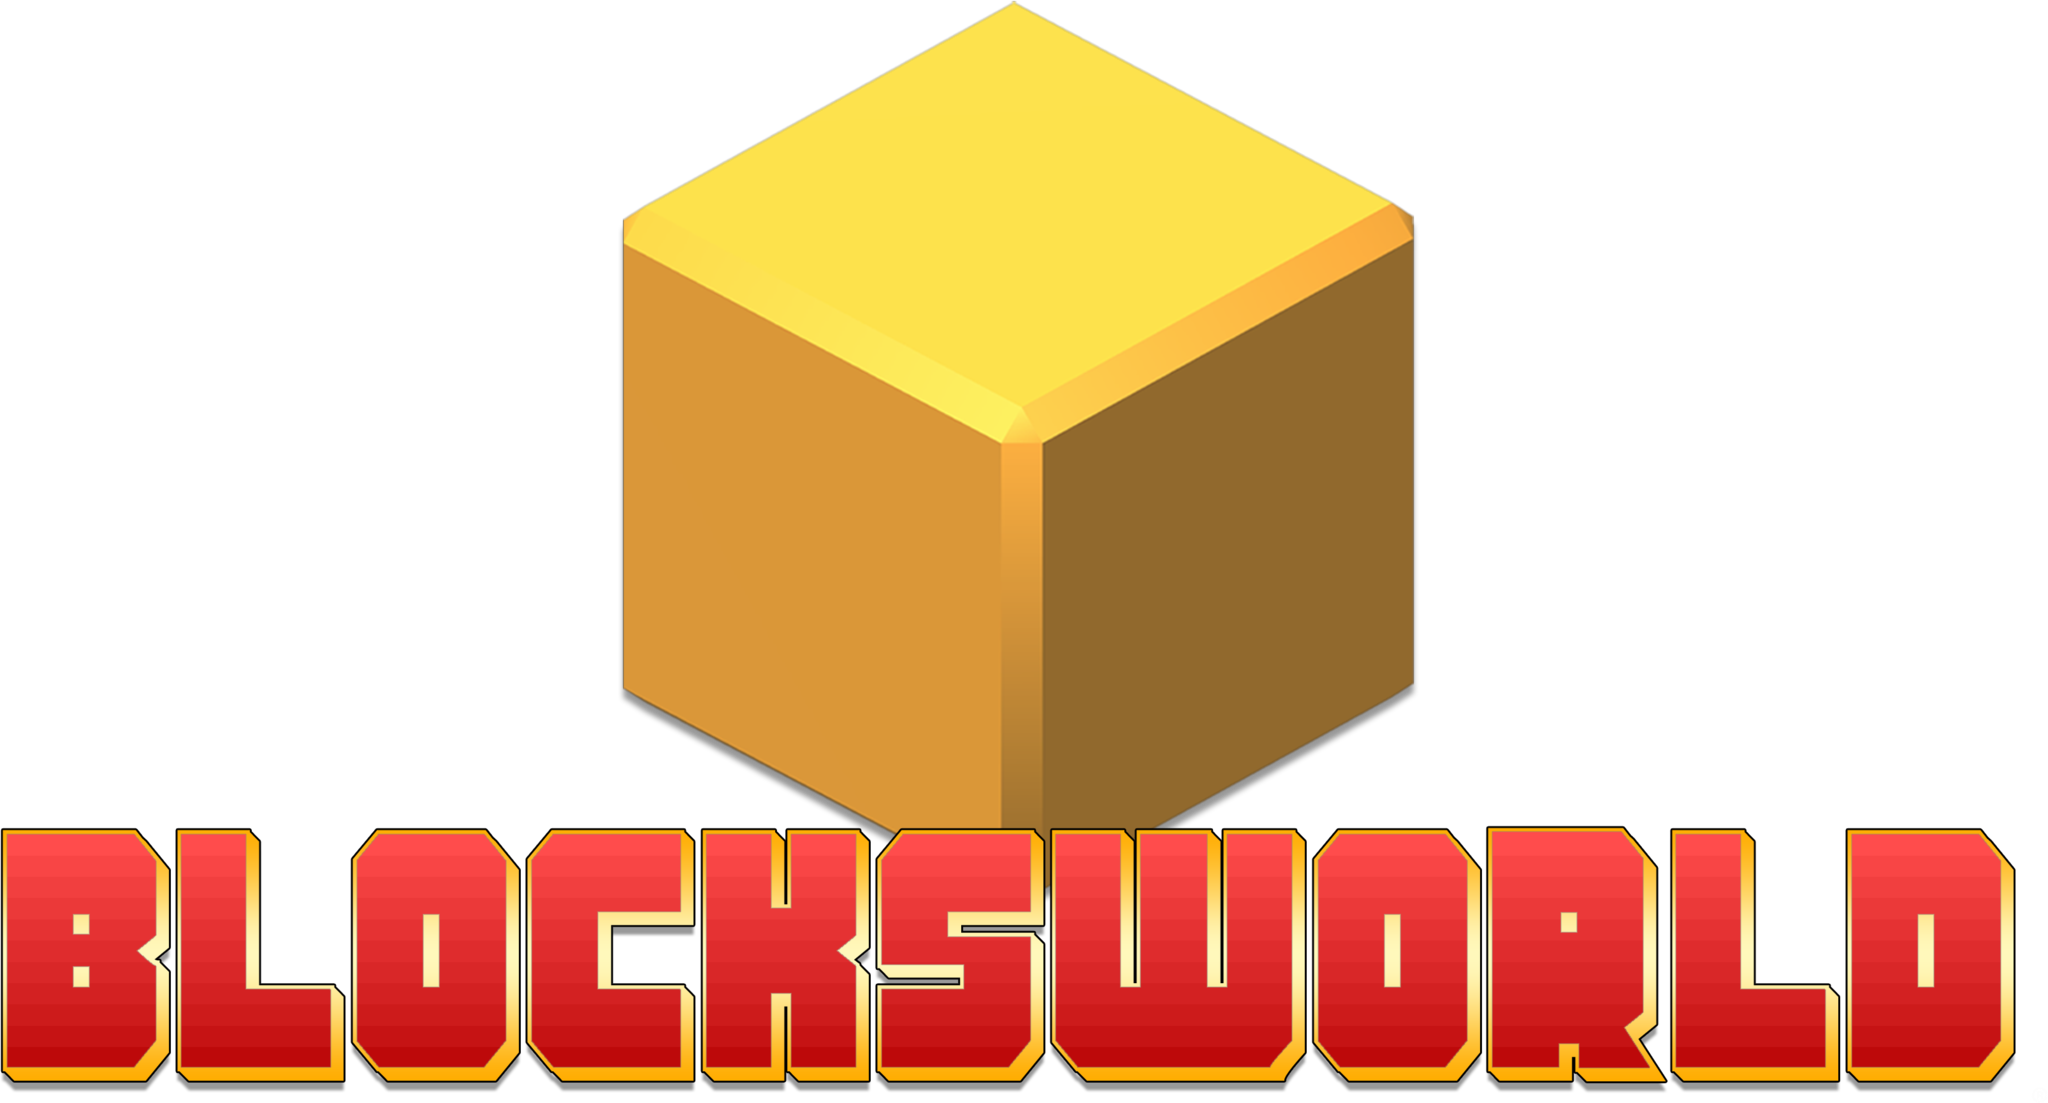 blocksworld hd mod apk download